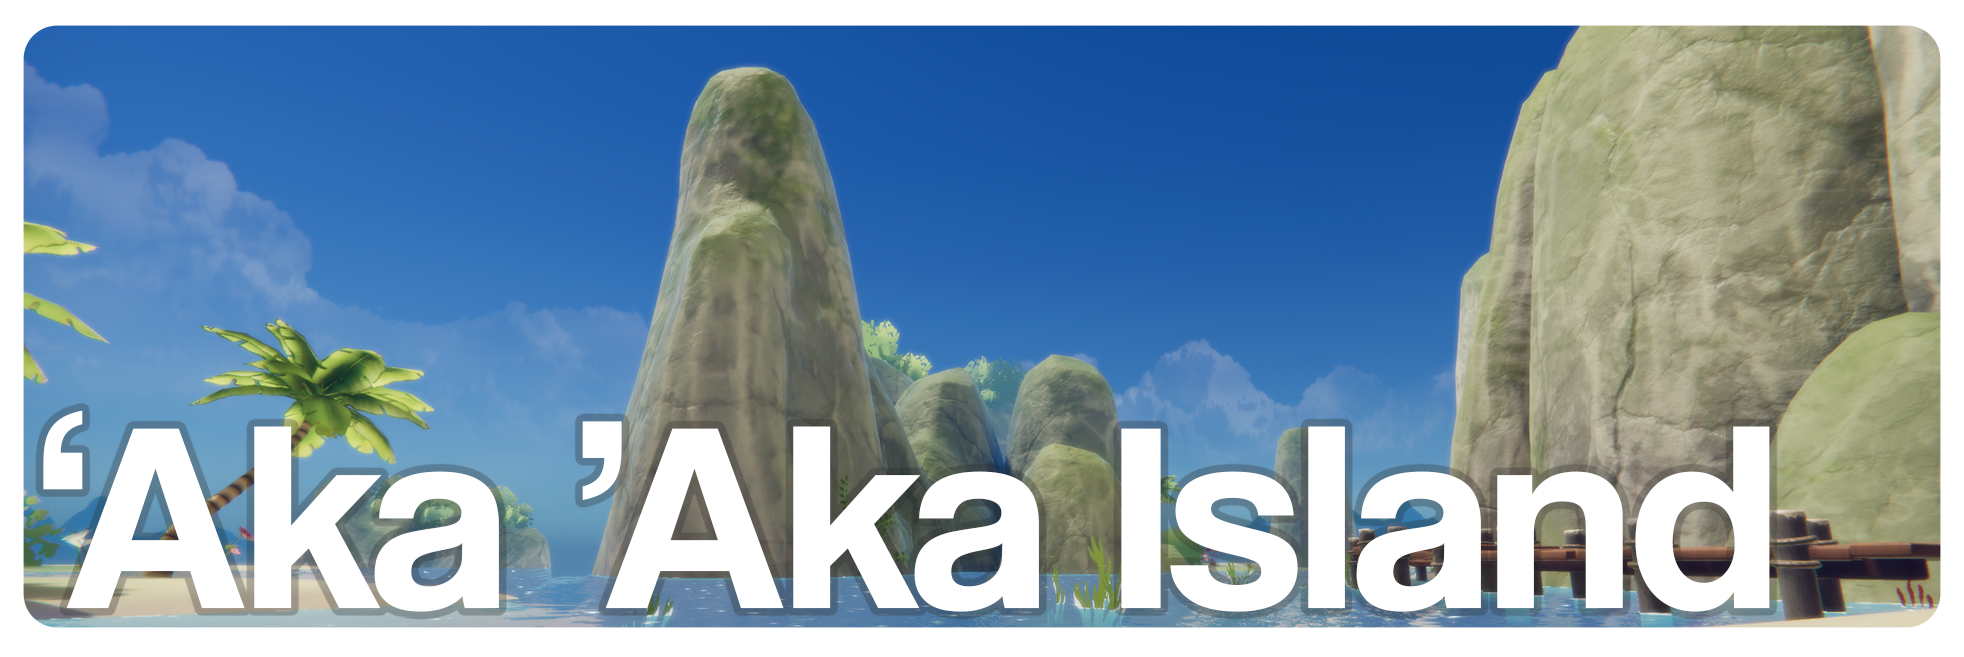 'Aka 'Aka Island